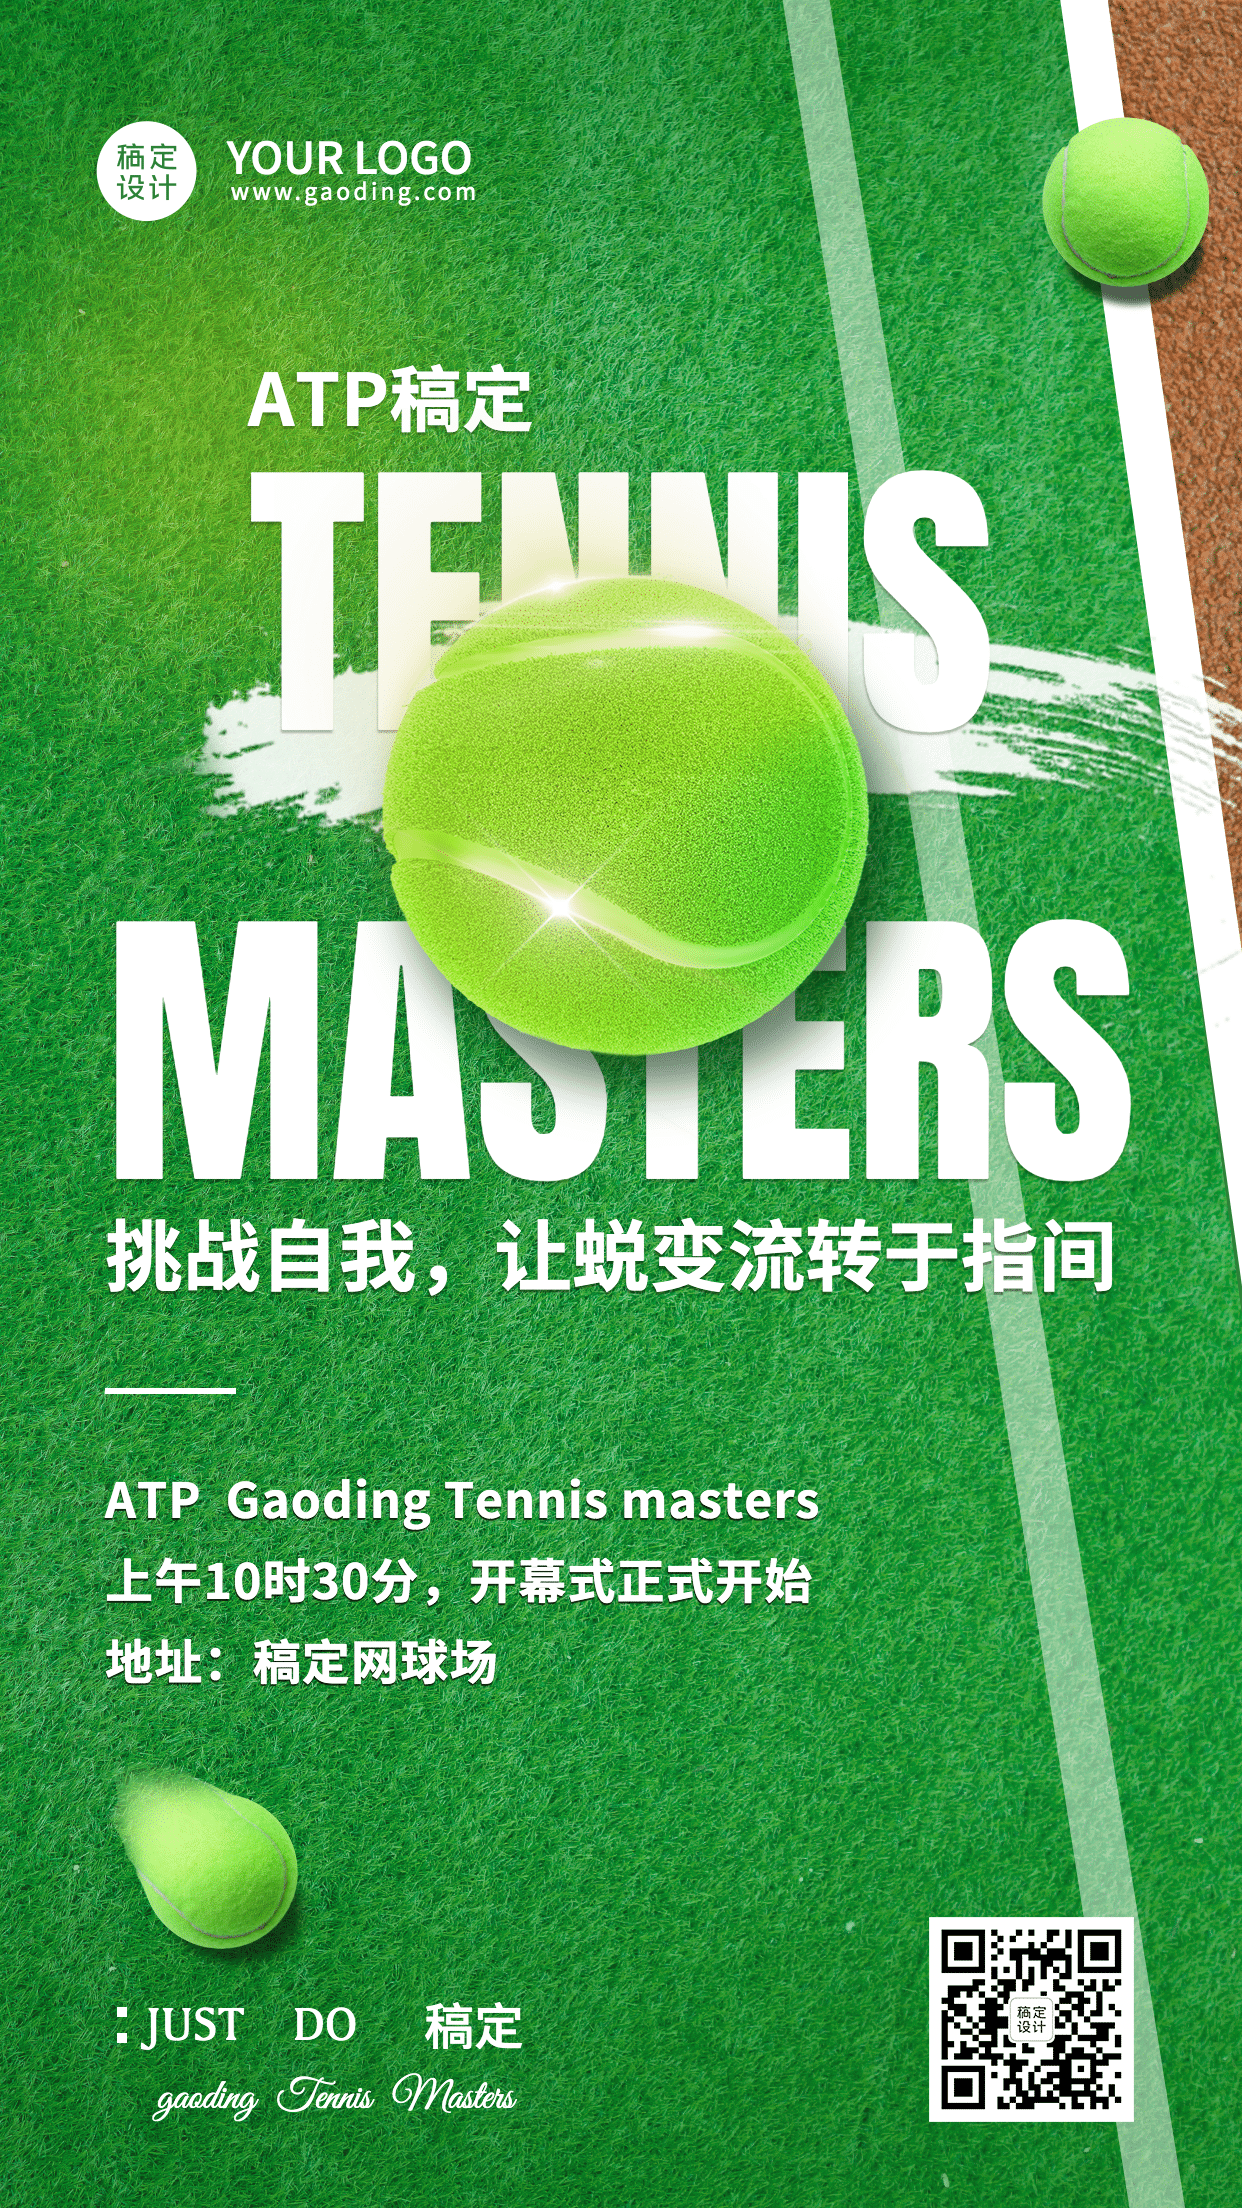 网球健身运动赛事宣传海报预览效果